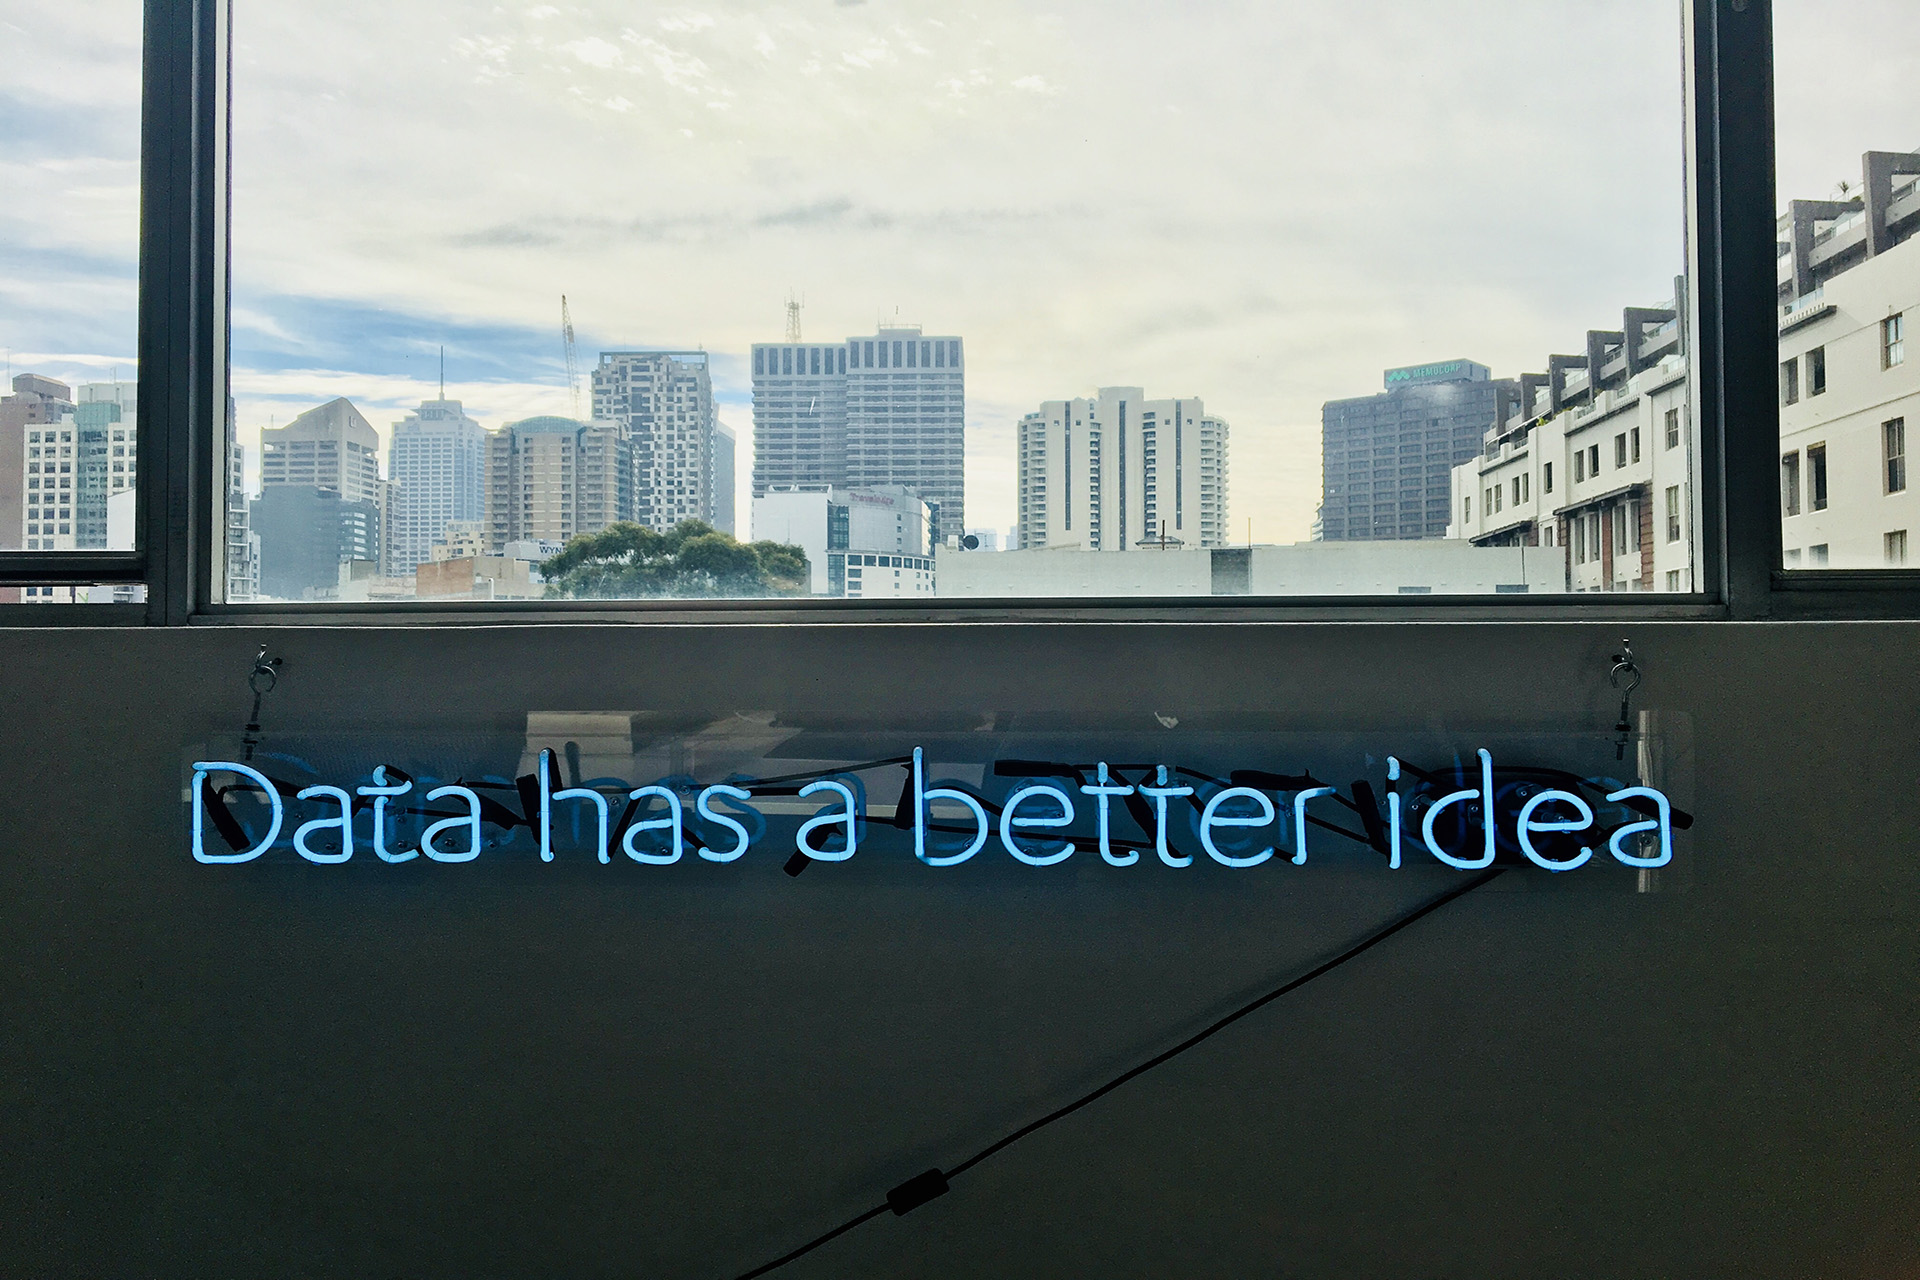 data has a better idea sign